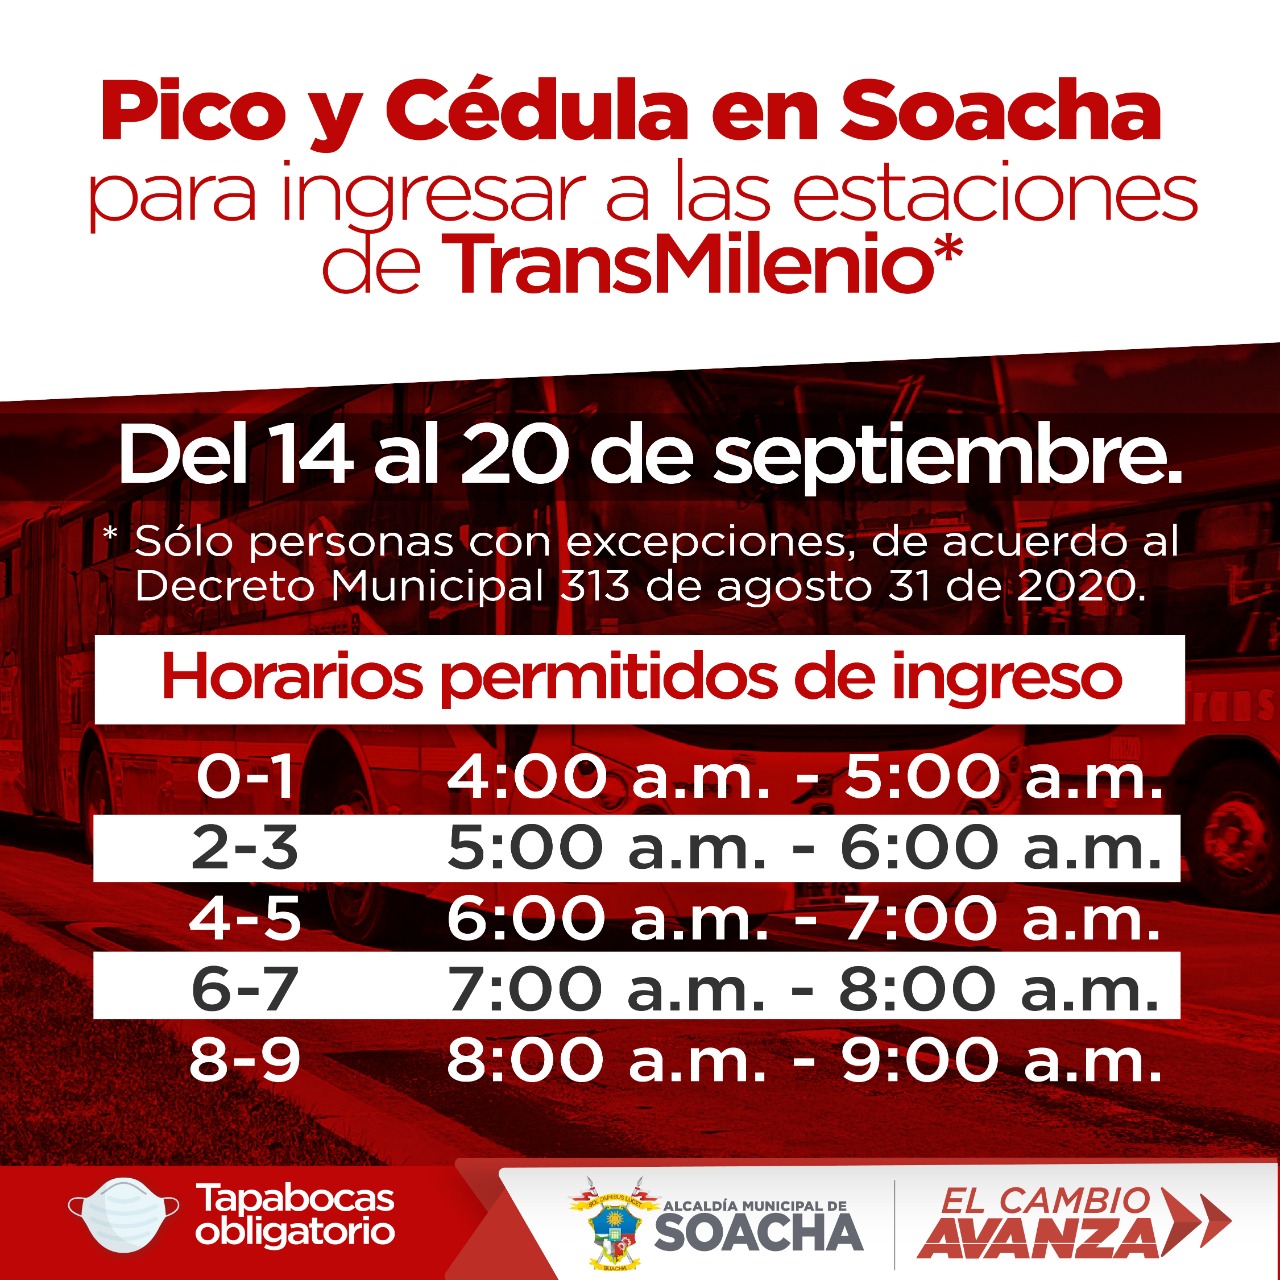 Pico y cédula en Soacha del 14 al 20 de septiembre